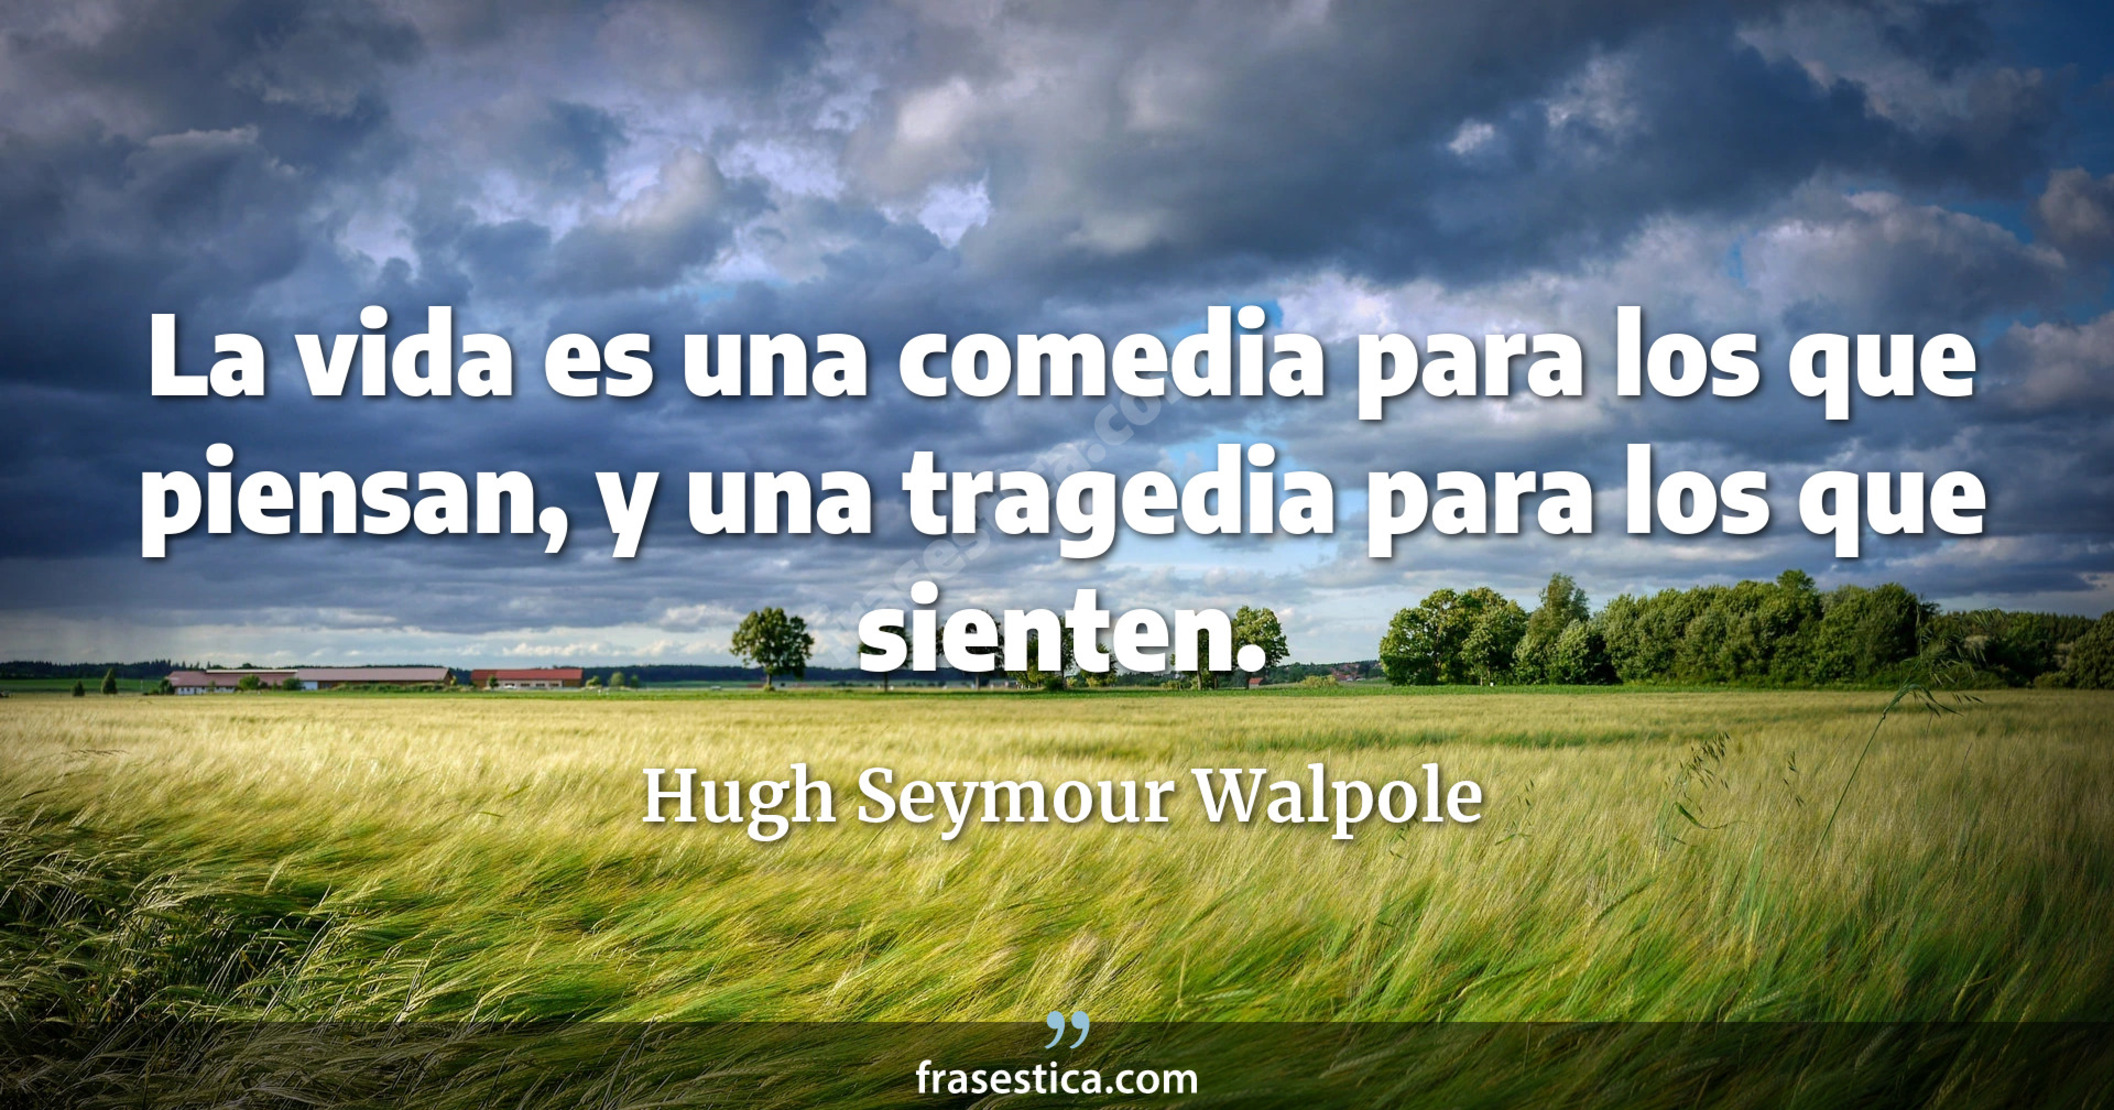 La vida es una comedia para los que piensan, y una tragedia para los que sienten. - Hugh Seymour Walpole